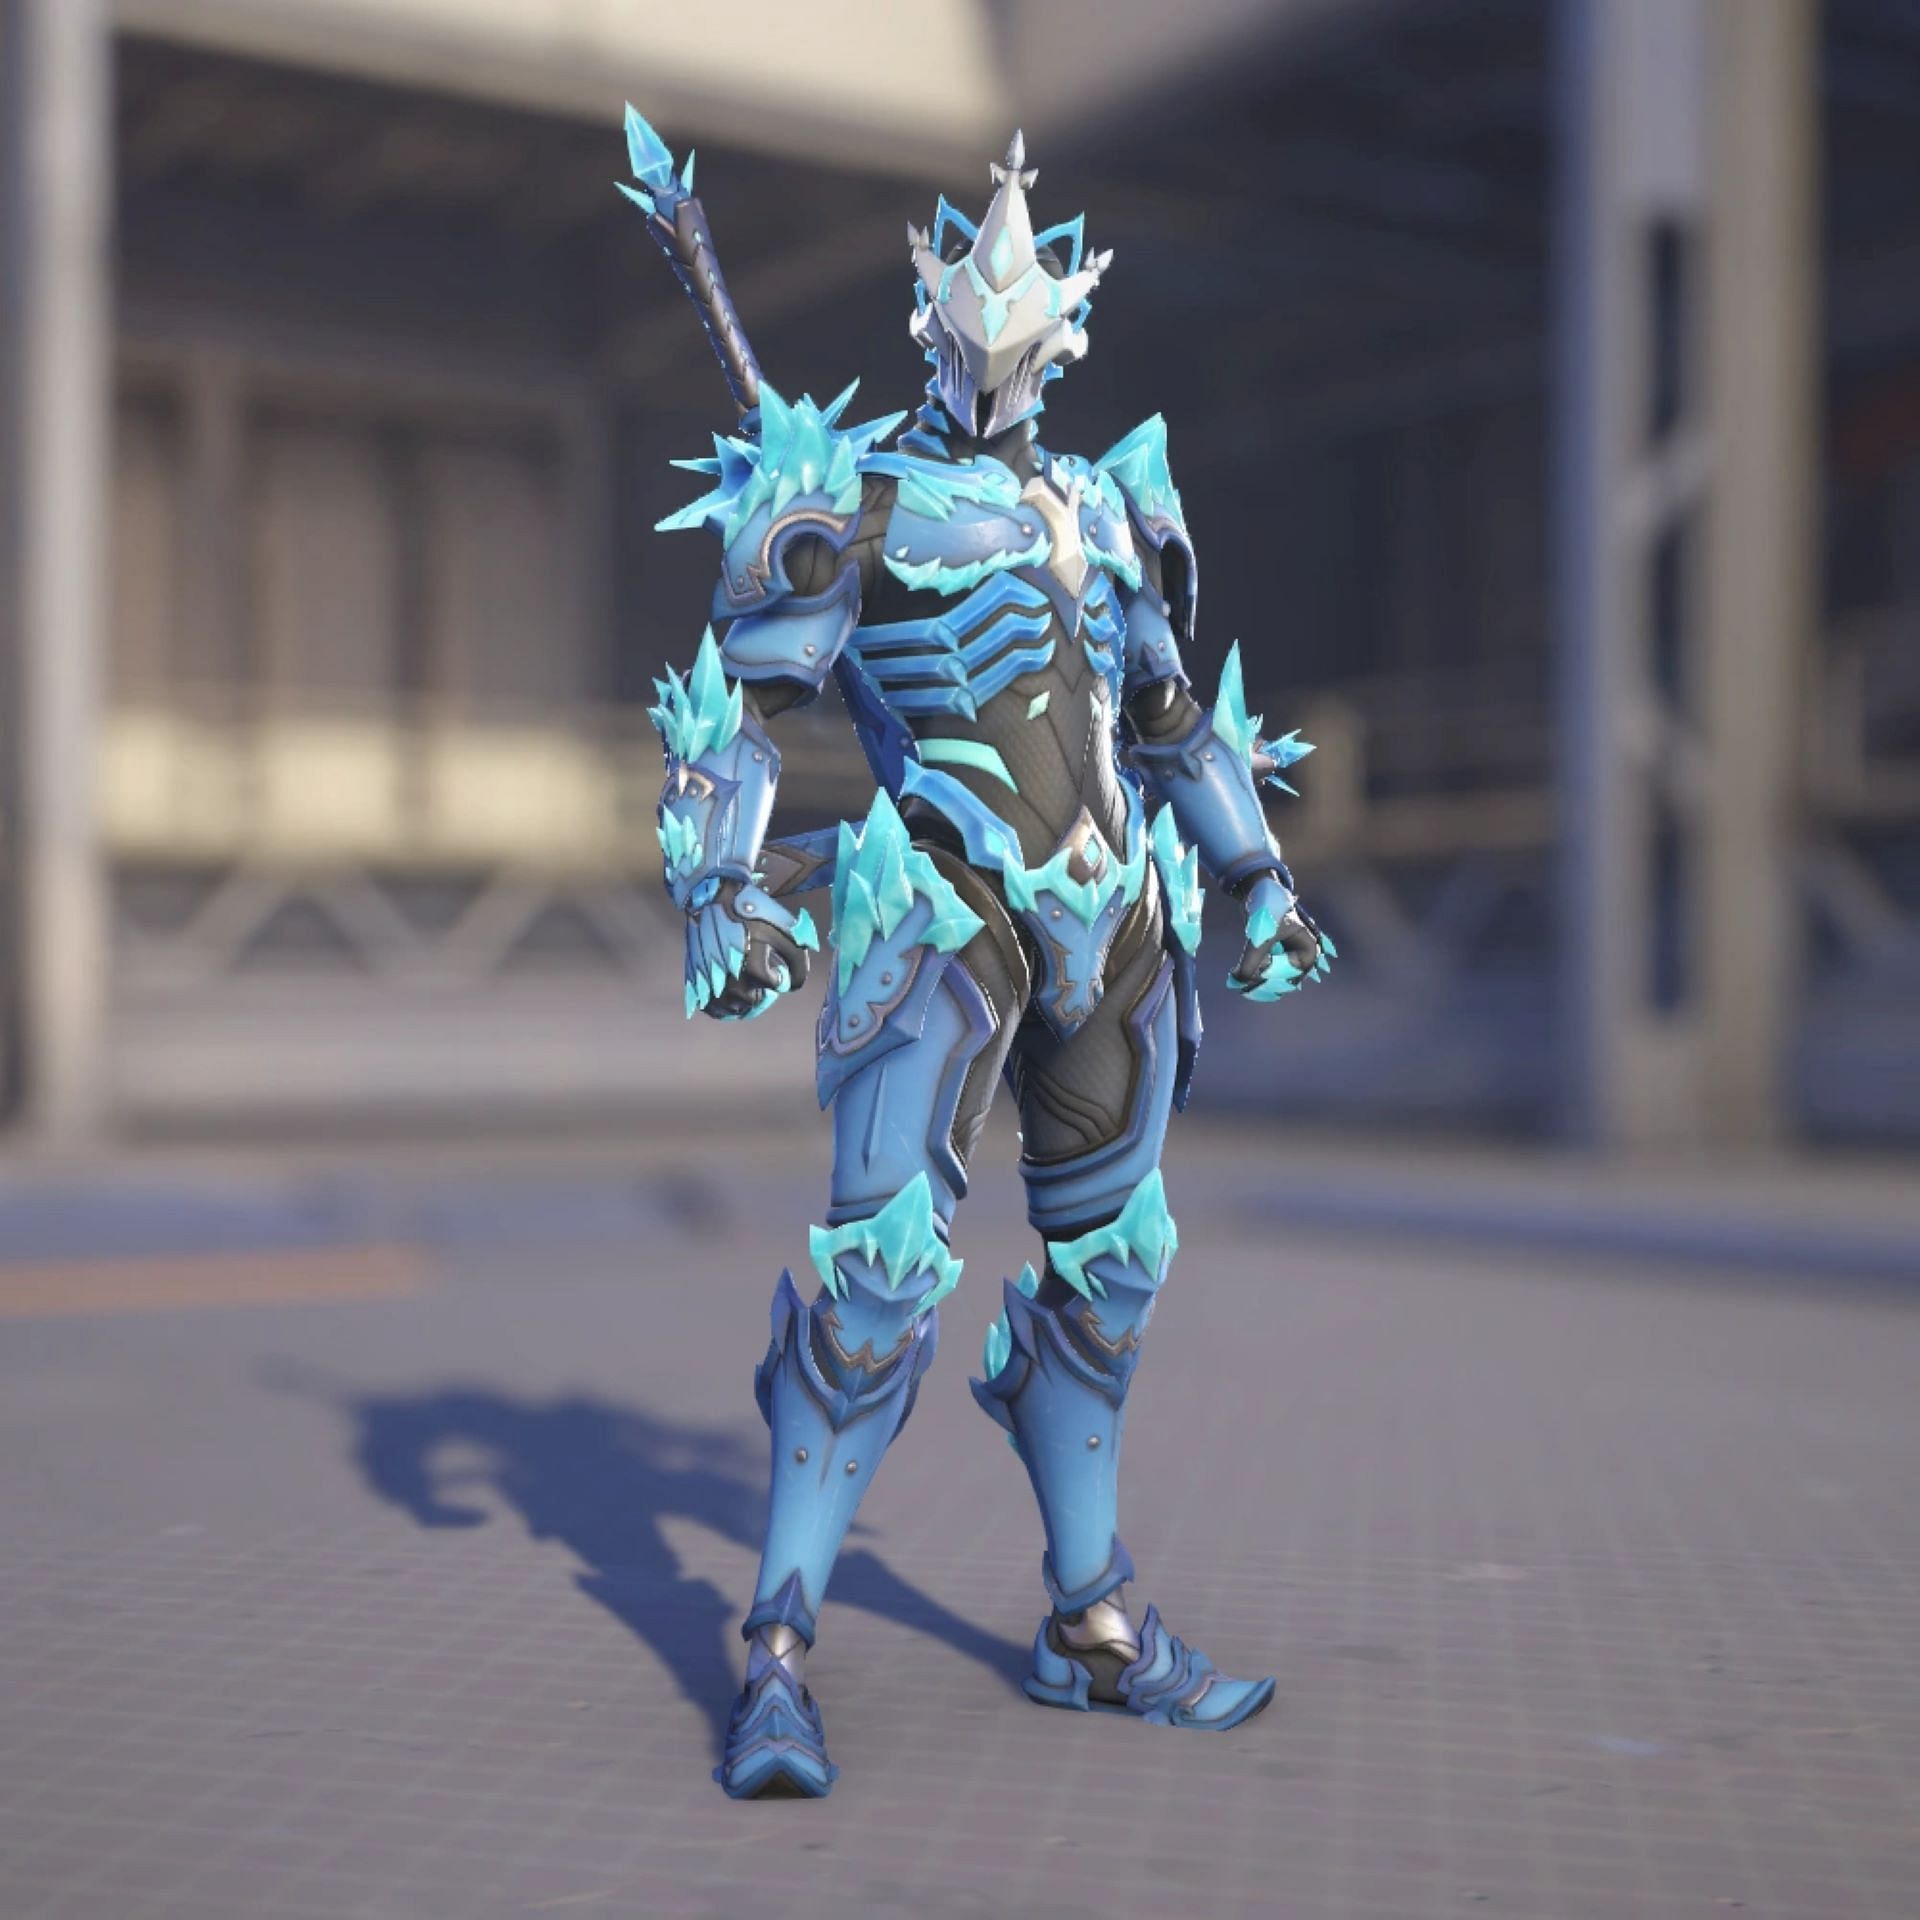 Ice Wraith Genji (Image via Blizzard Entertainment)